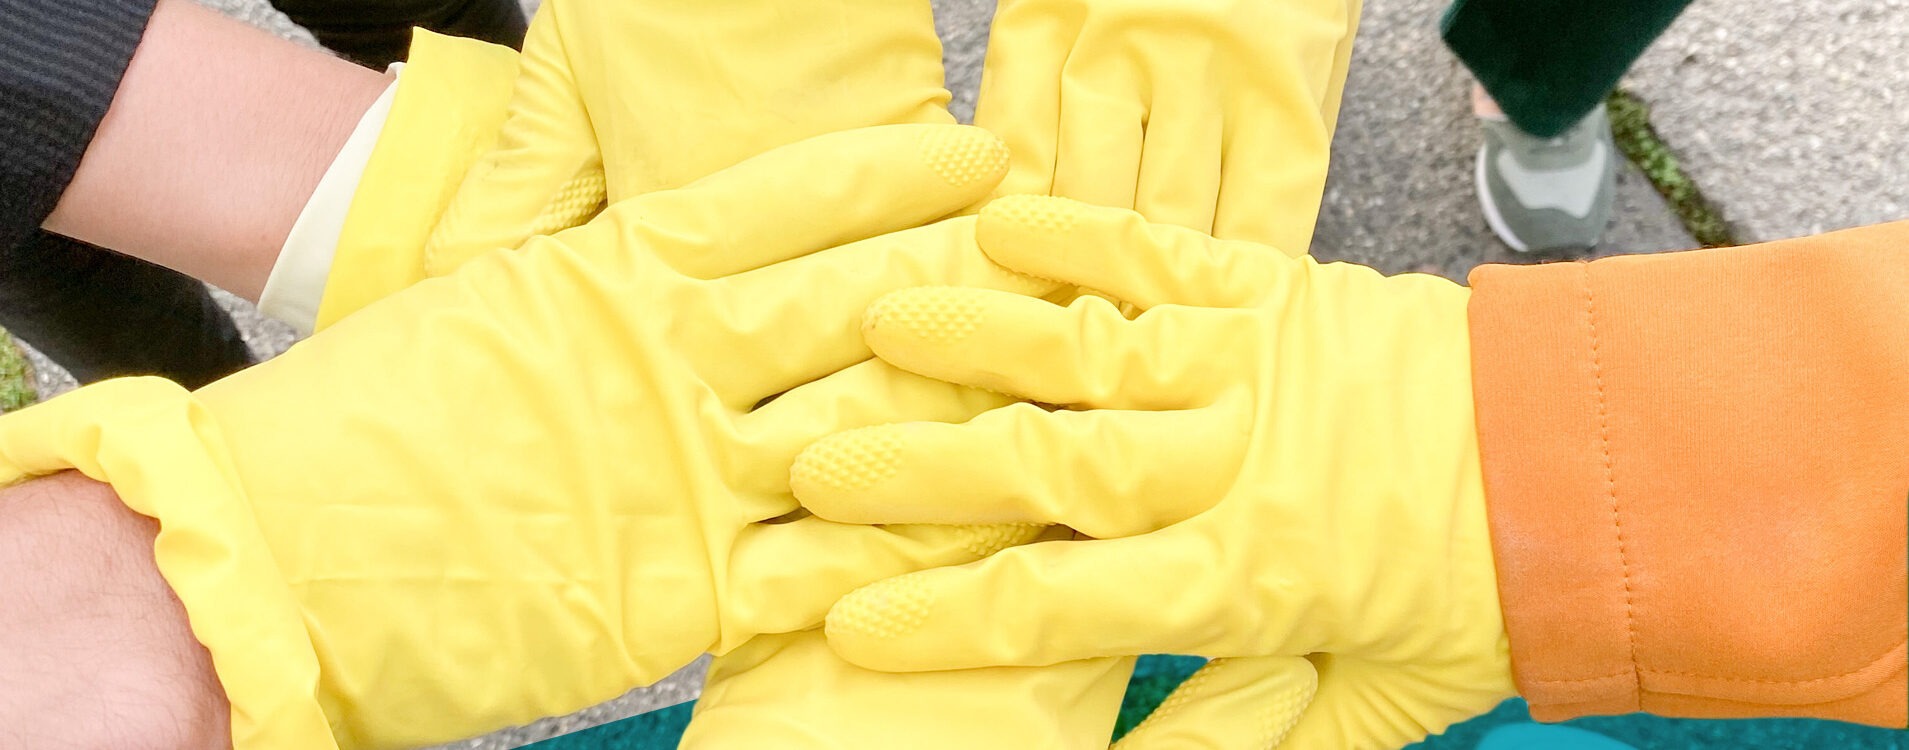 Sechs Hände mit gelben Handschuhen berühren sich in der Mitte zum Gruß